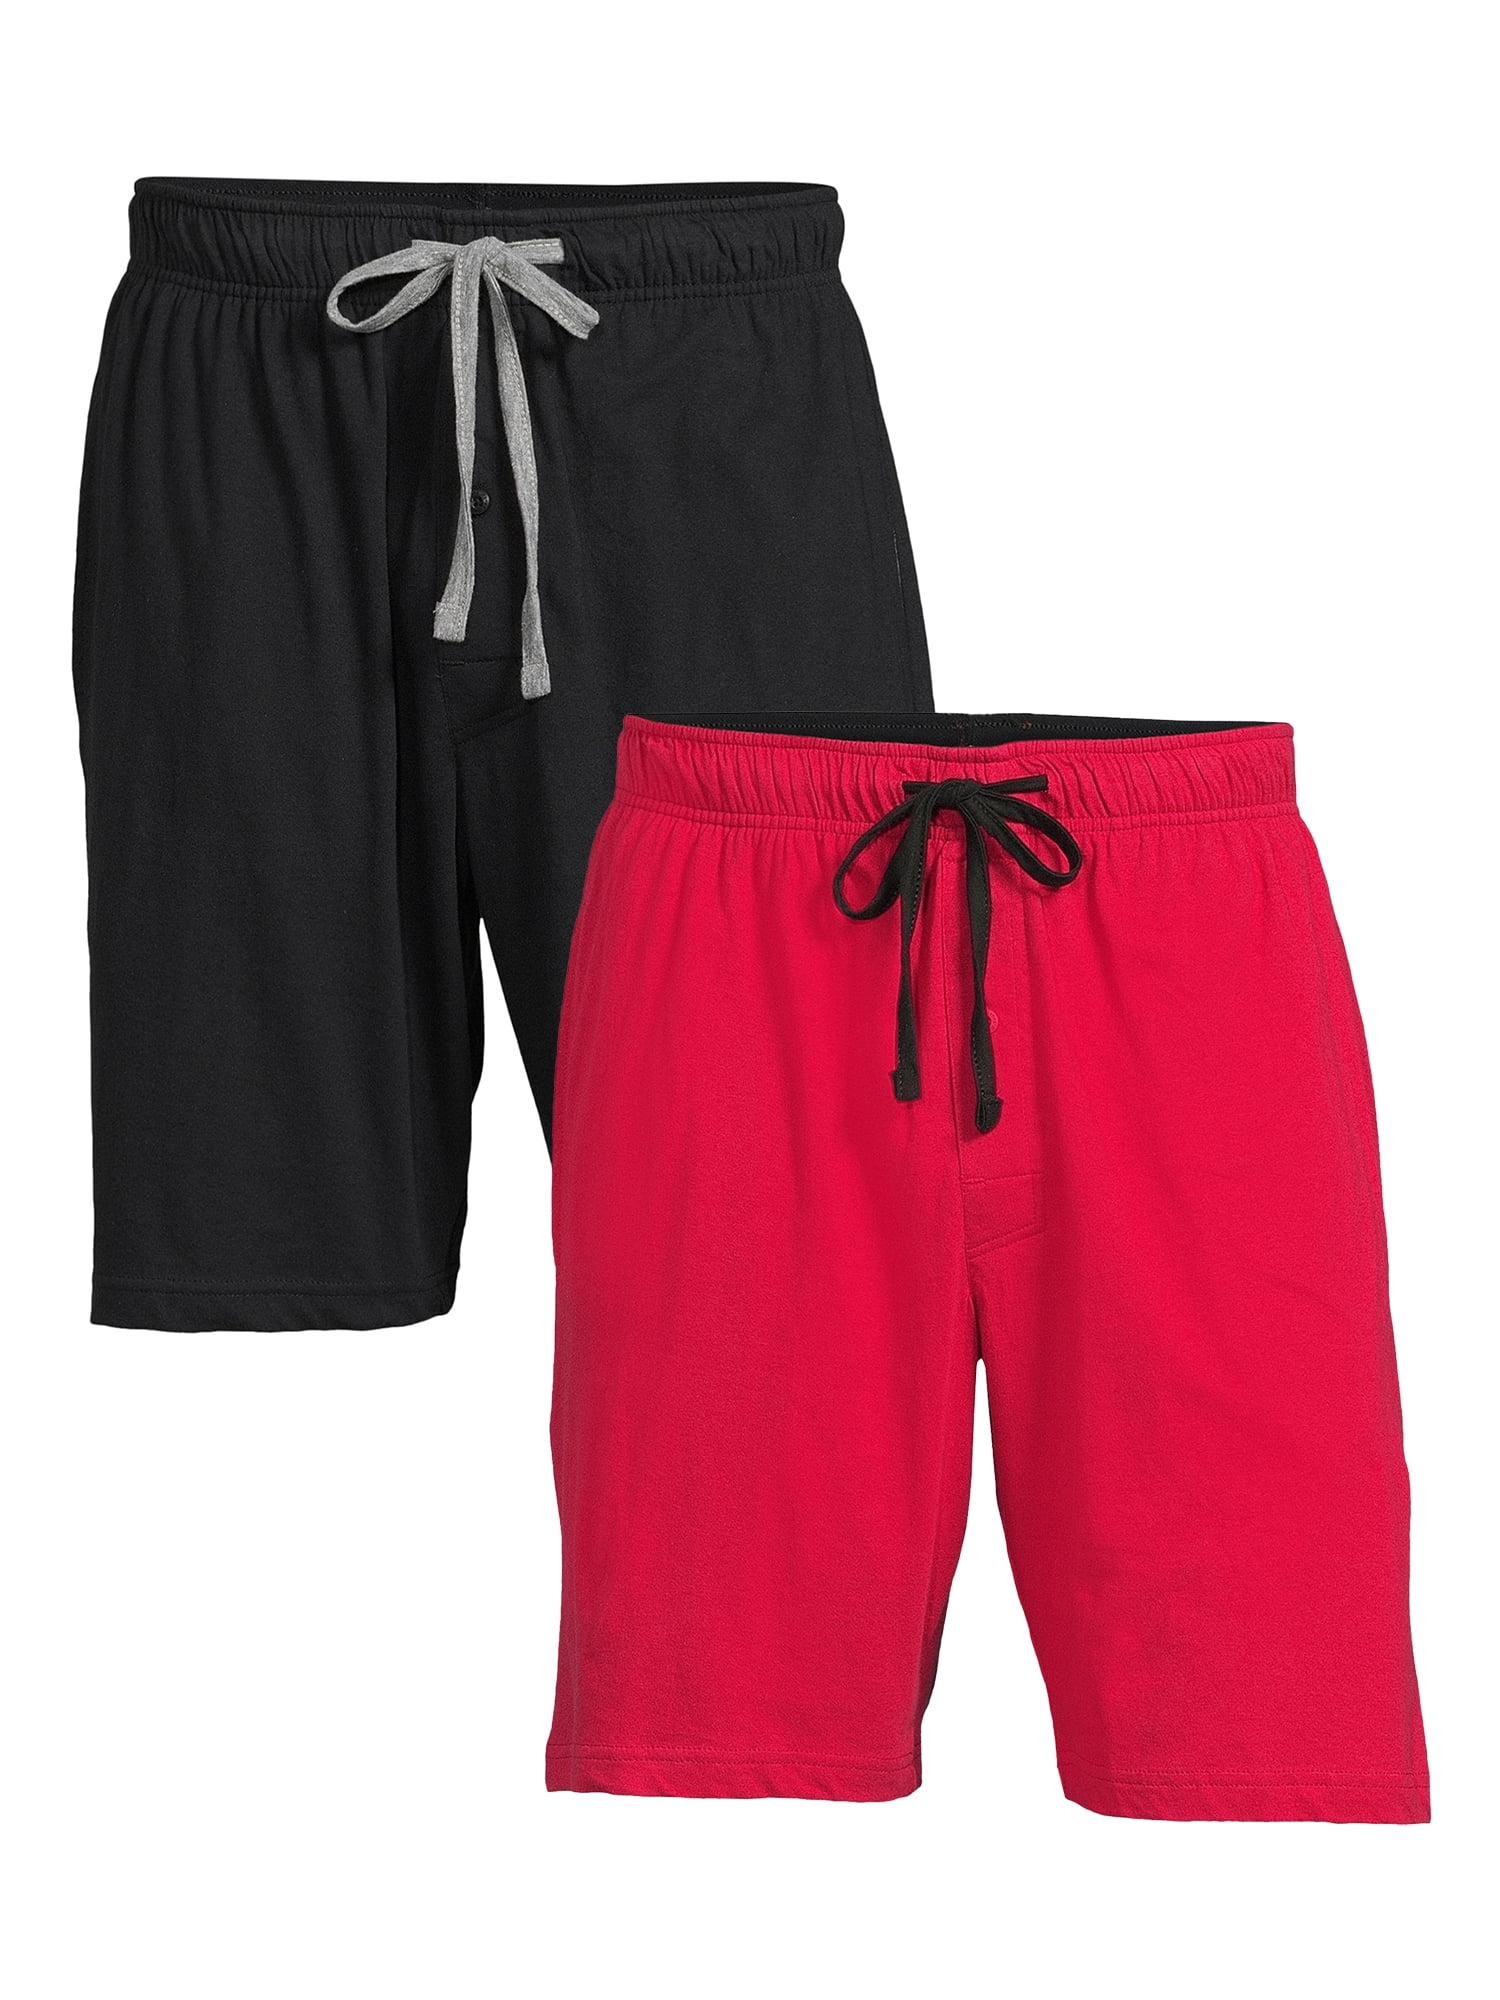 Hanes Men's and Big Men's X-temp Knit Jam Shorts, 2-Pack - Walmart.com